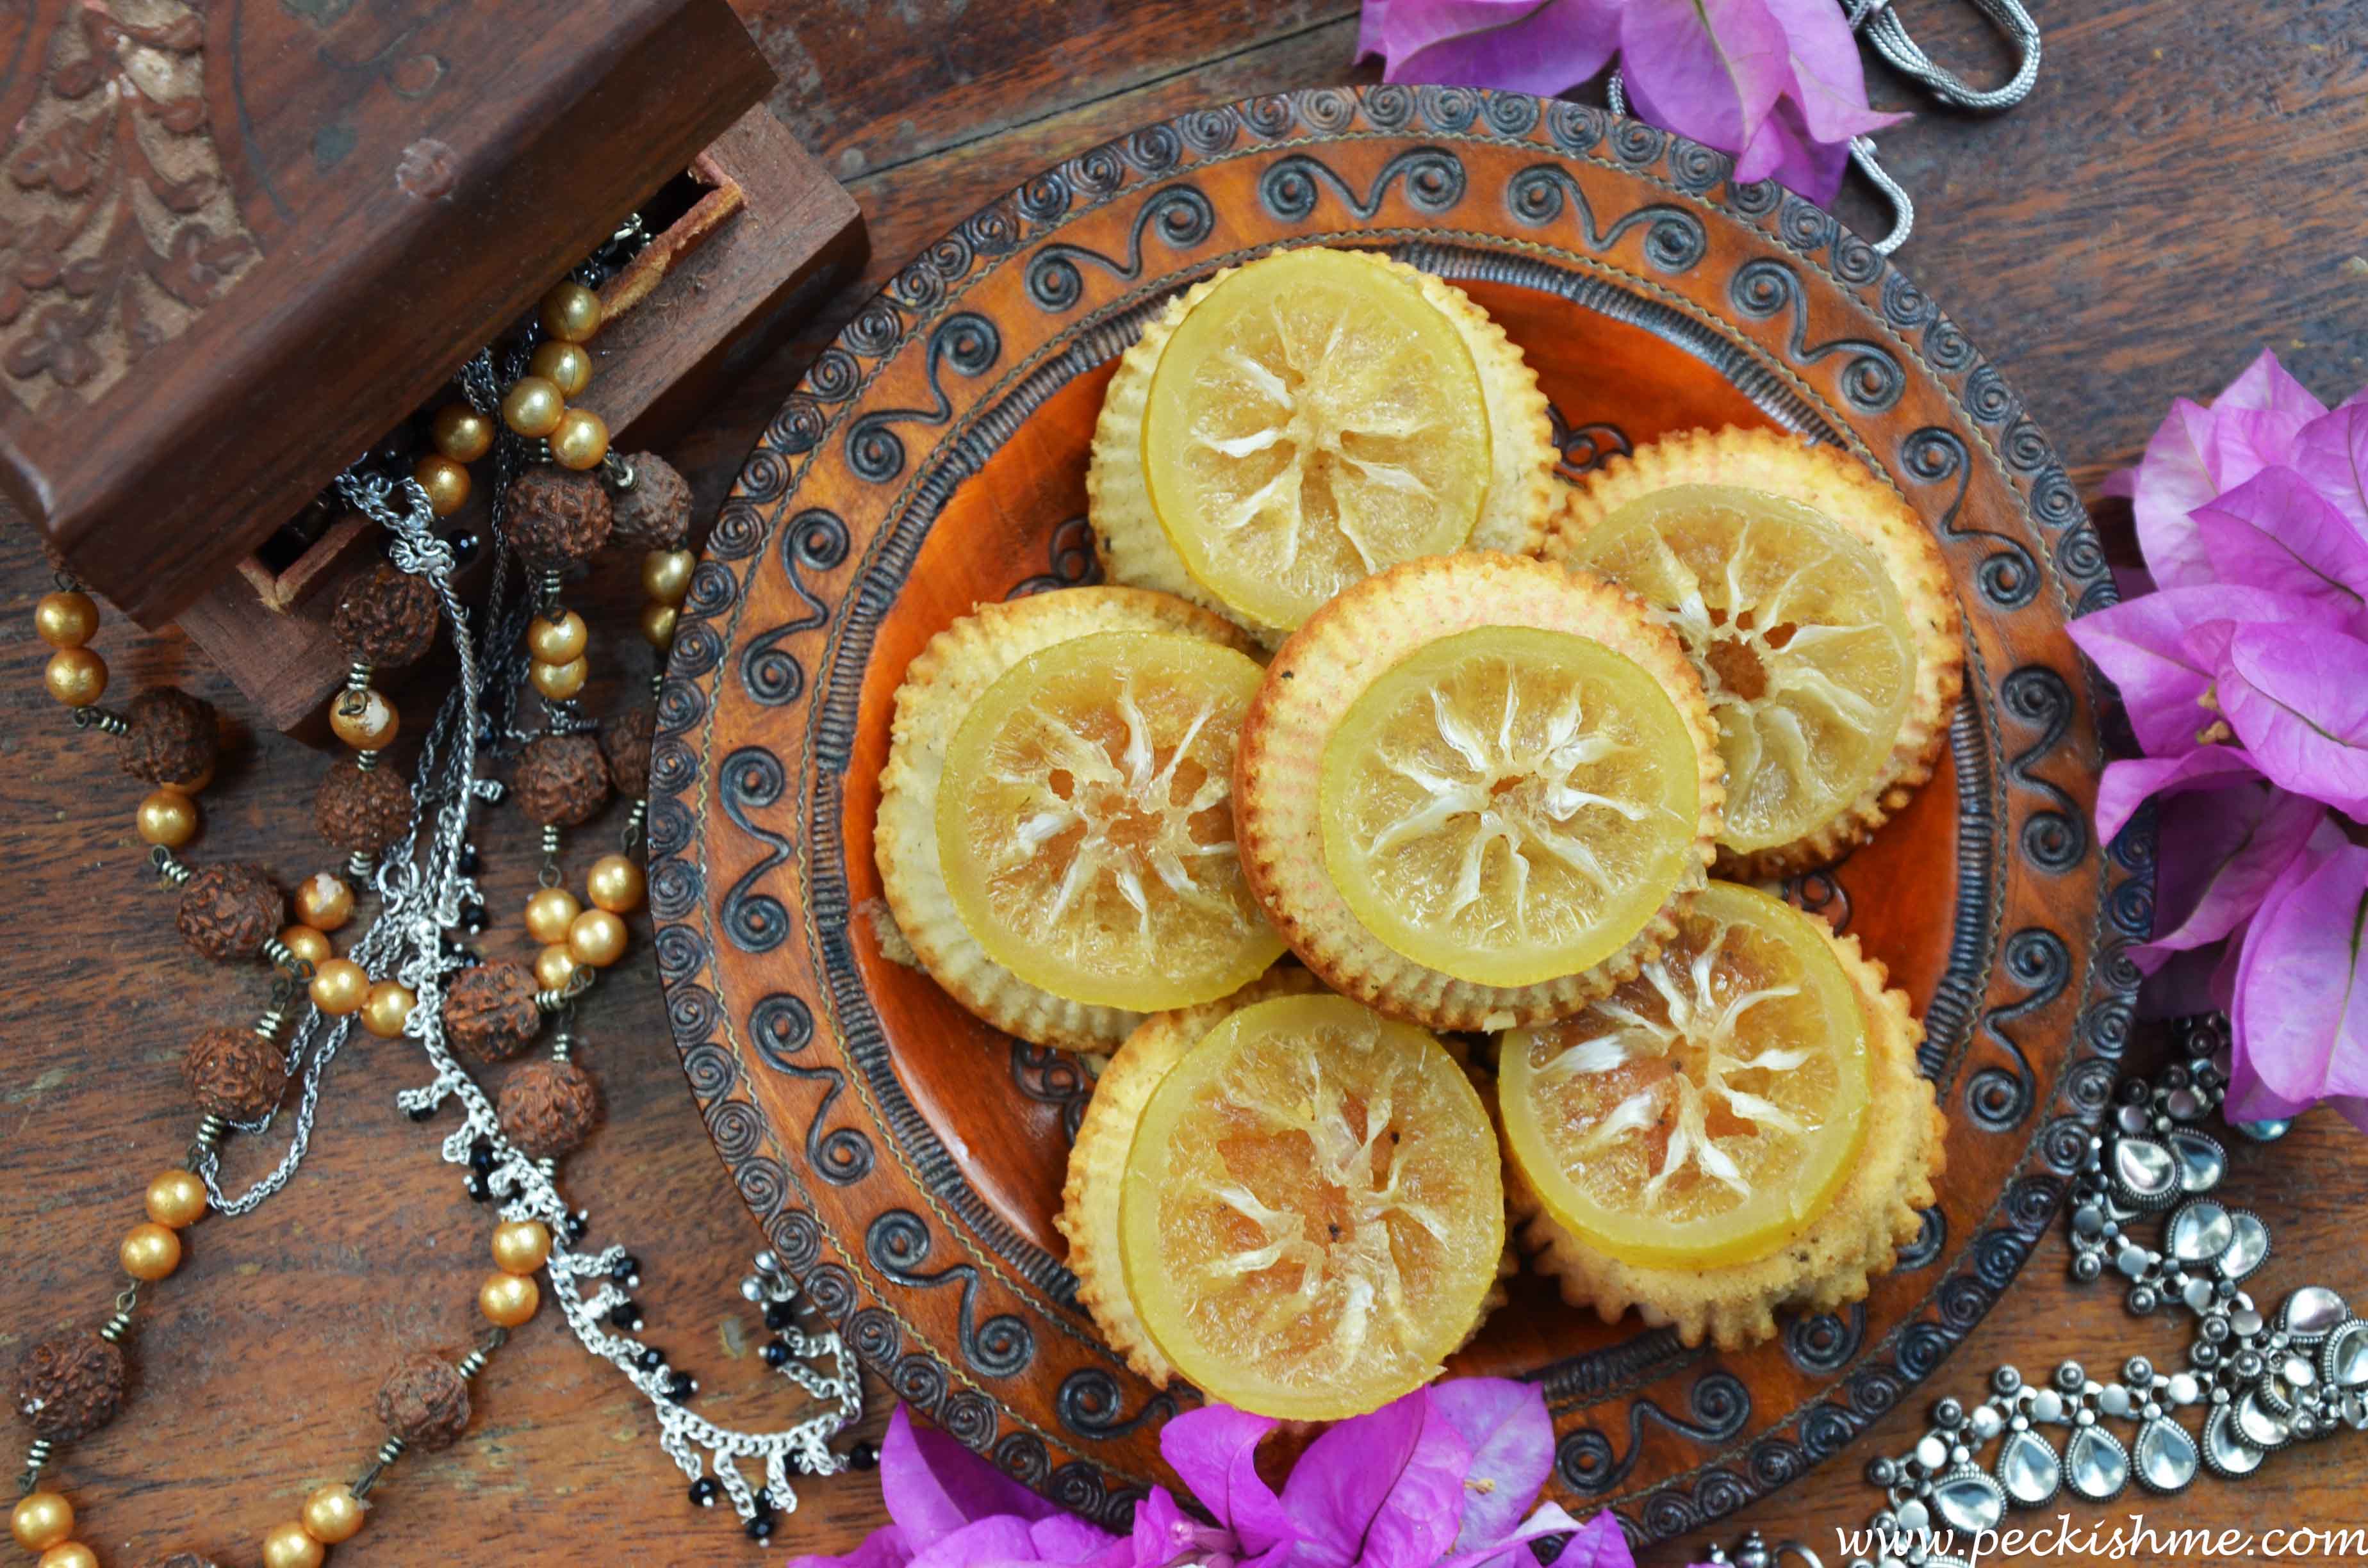 Game of Thrones Inspired Dessert: Bite Sized Lemon Pound Cakes